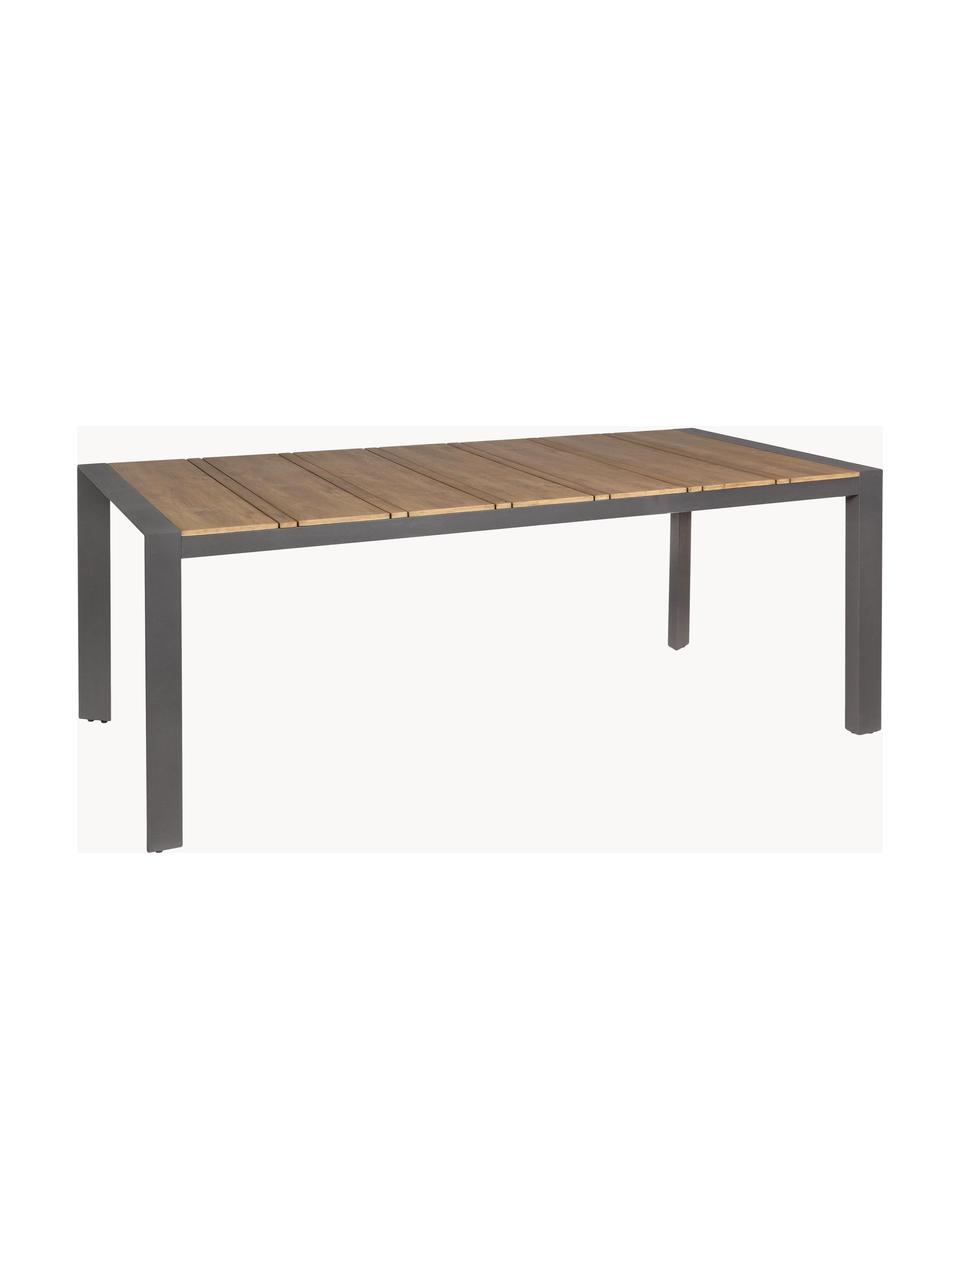 Gartentisch Kubik, 198 x 100 cm, Tischplatte: Sperrholz, beschichtet, Beine: Aluminium, pulverbeschich, Sperrholz, Dunkelgrau, B 198 x T 100 cm